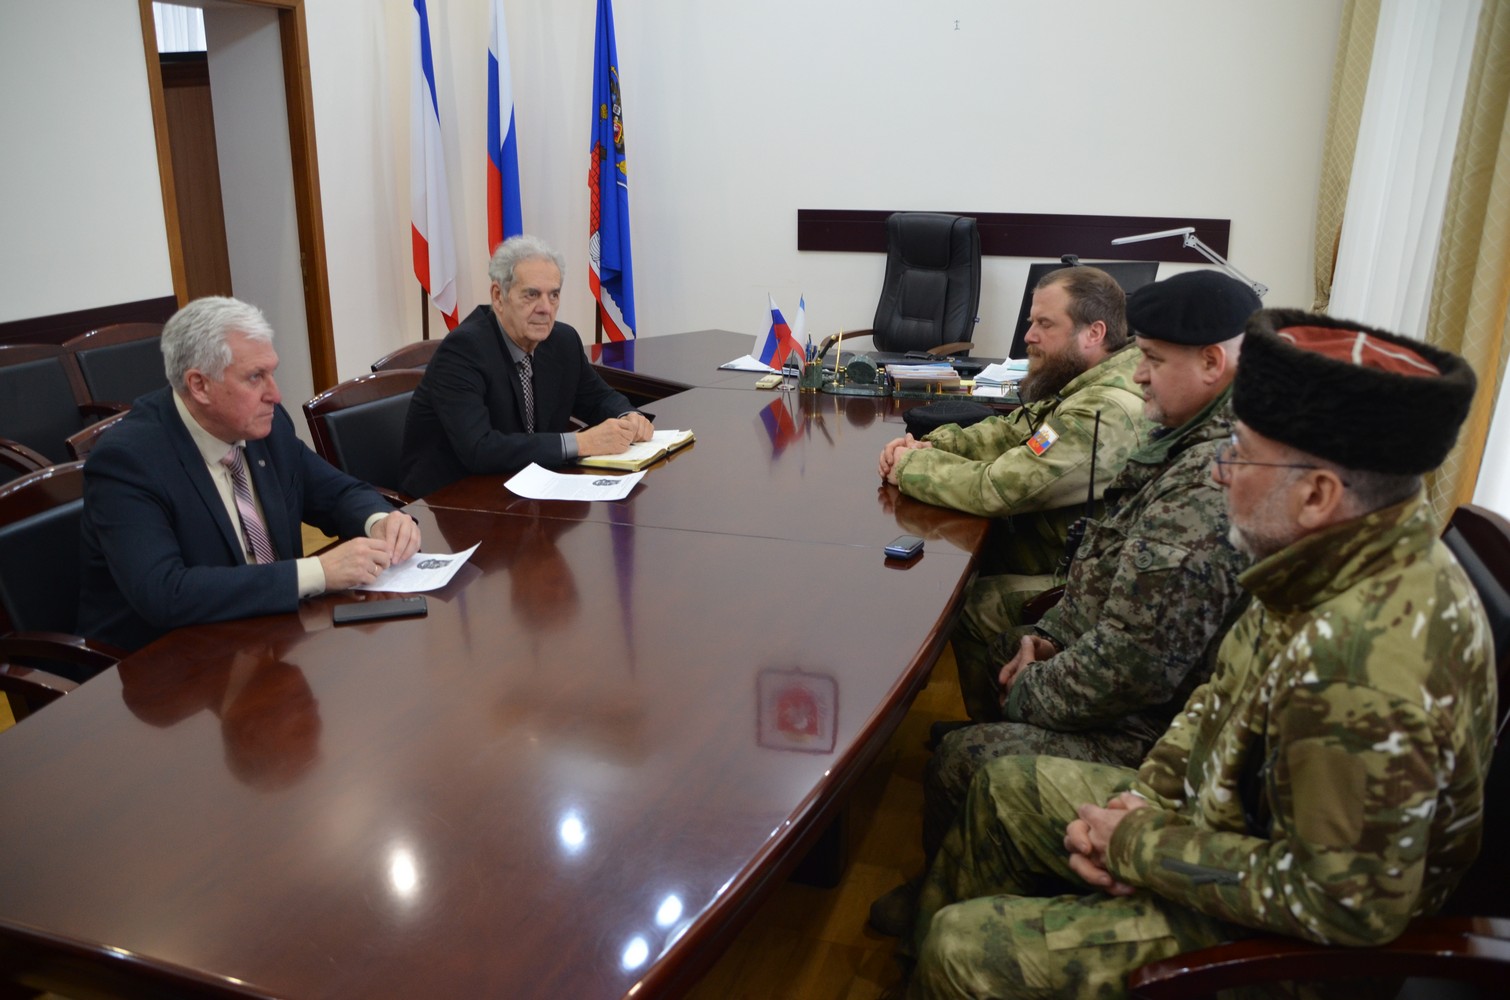 Руководители города встретились  с представителями казачьего батальона «Скиф»